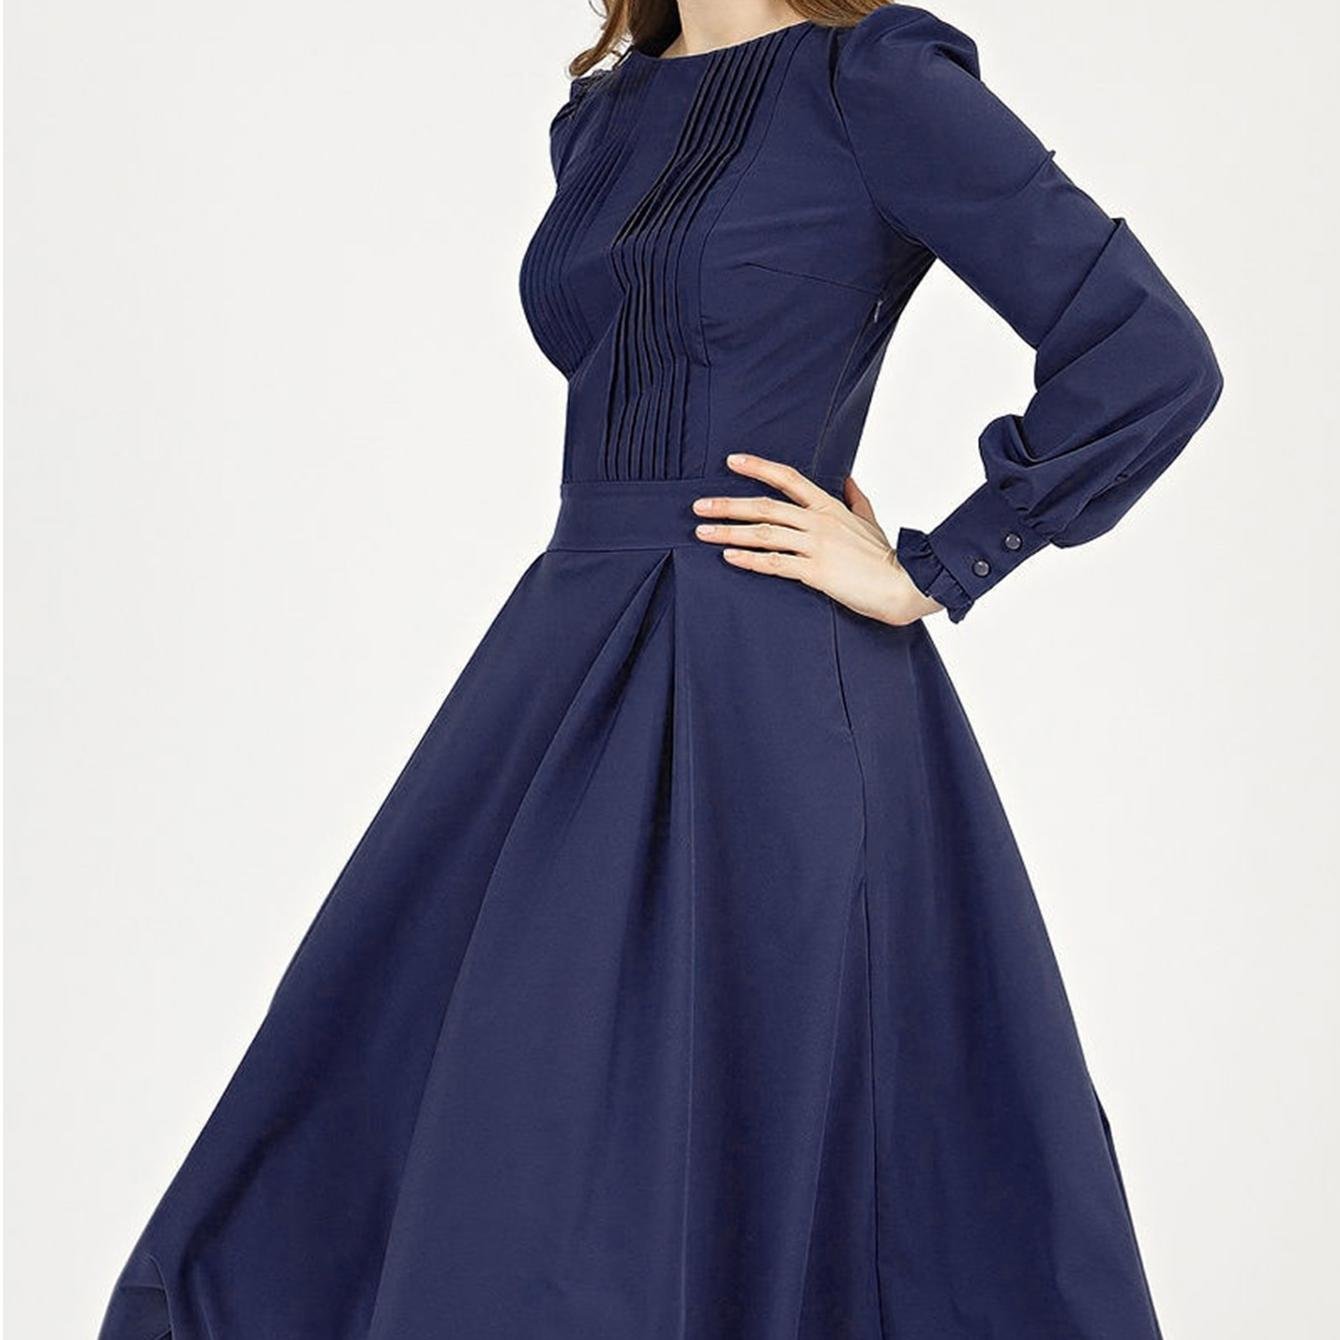 S.FLAVOR – robe Midi classique à manches longues pour femmes, élégante, col rond, couleur marine, tenue de travail, printemps été 2022